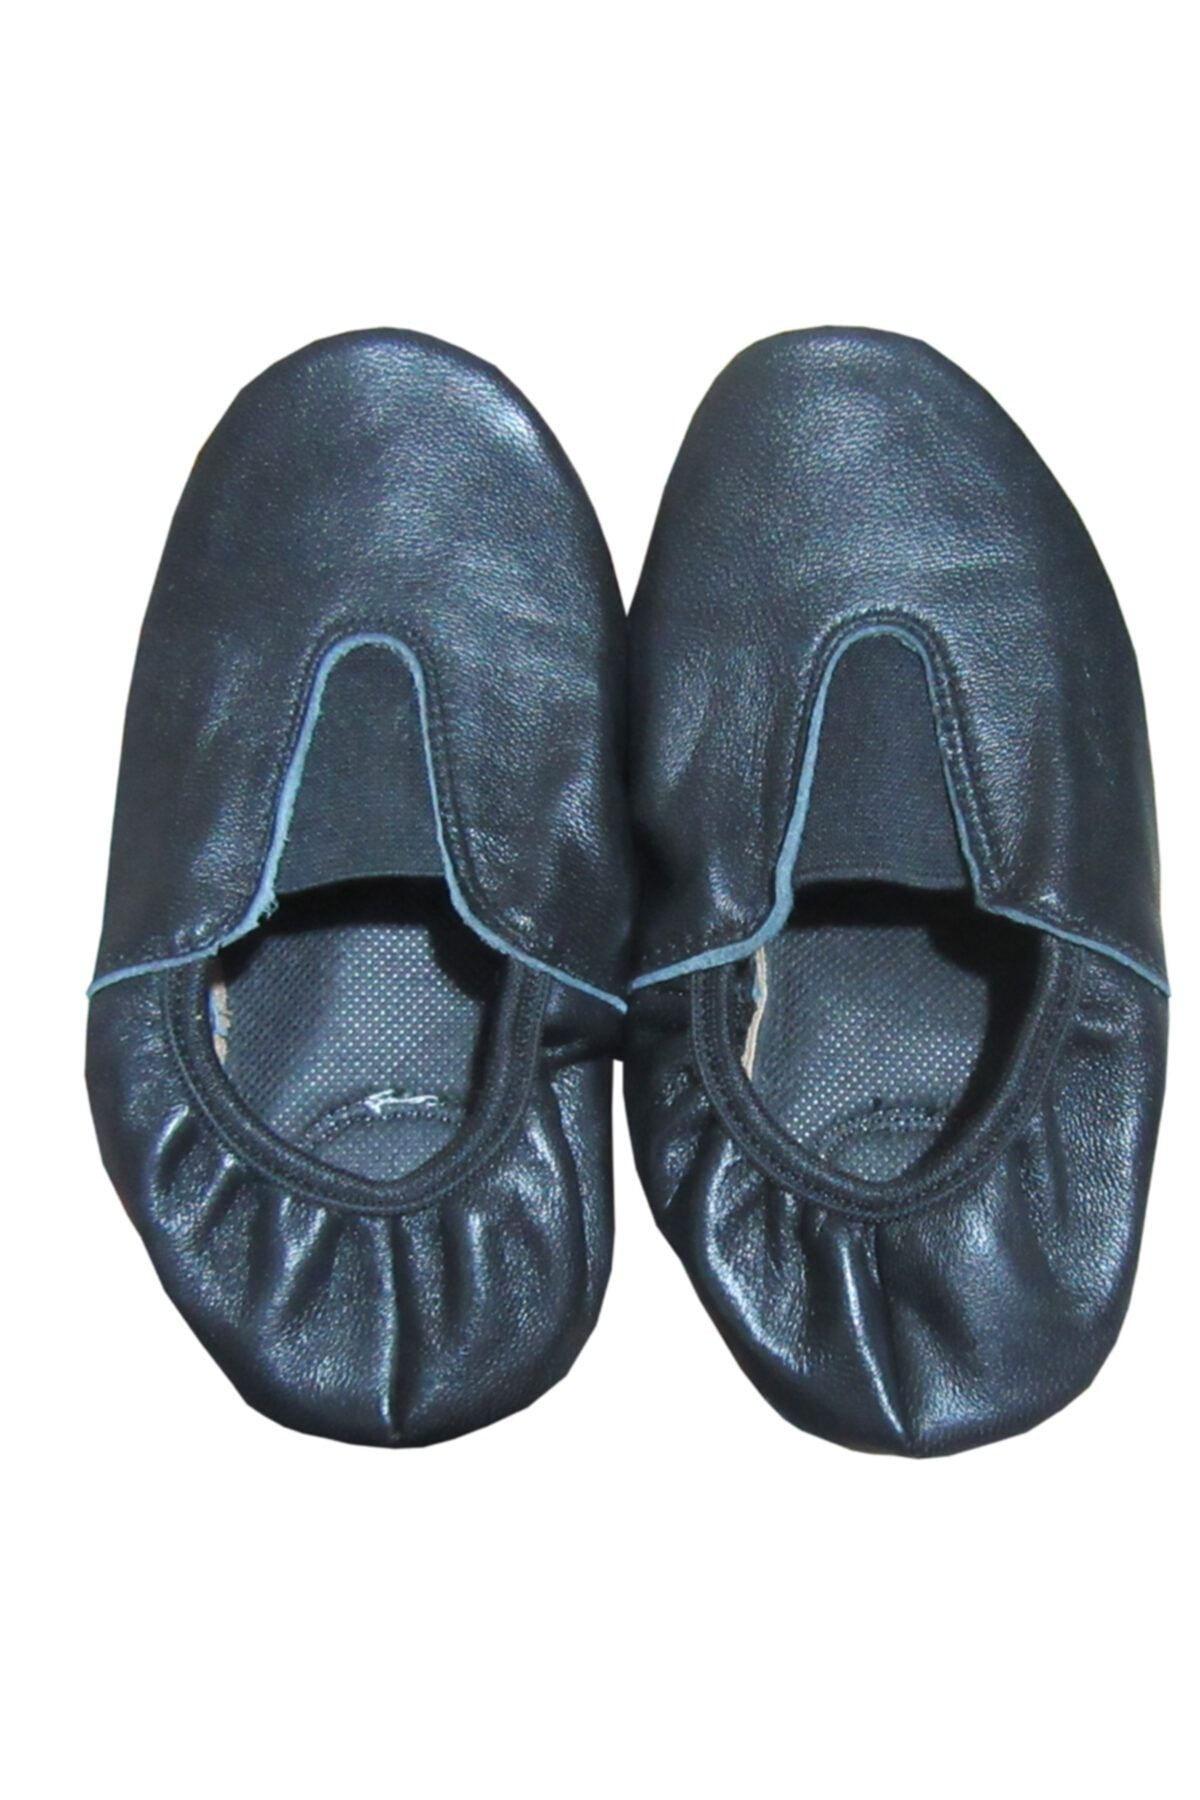 salarticaret Deri Pisipisi Siyah Renk Deri Tabanı Kaydırmaz Bale Ayakkabısı